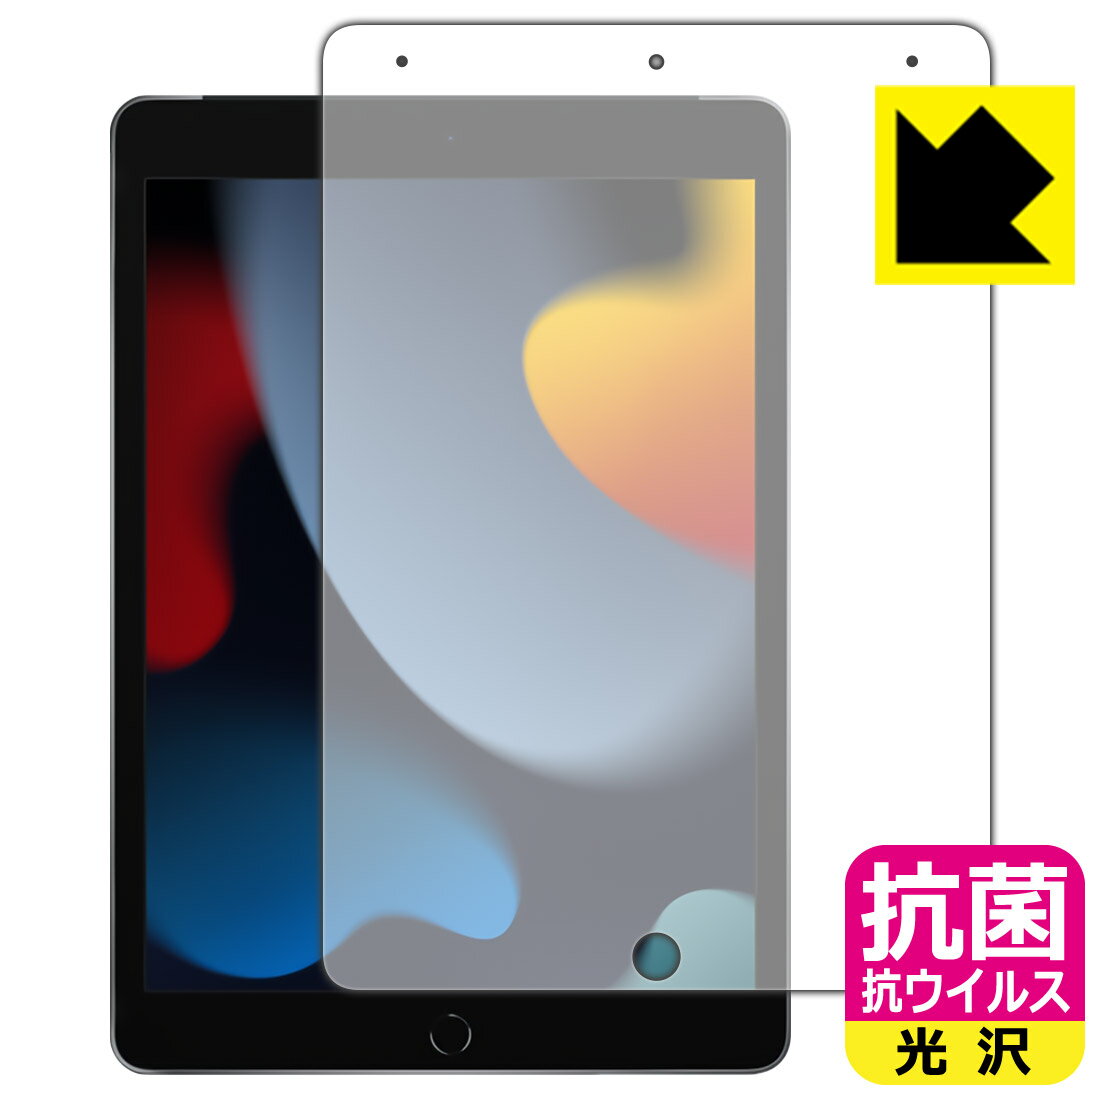 抗菌 抗ウイルス【光沢】保護フィルム iPad (第9世代・2021年発売モデル) 前面のみ 日本製 自社製造直販